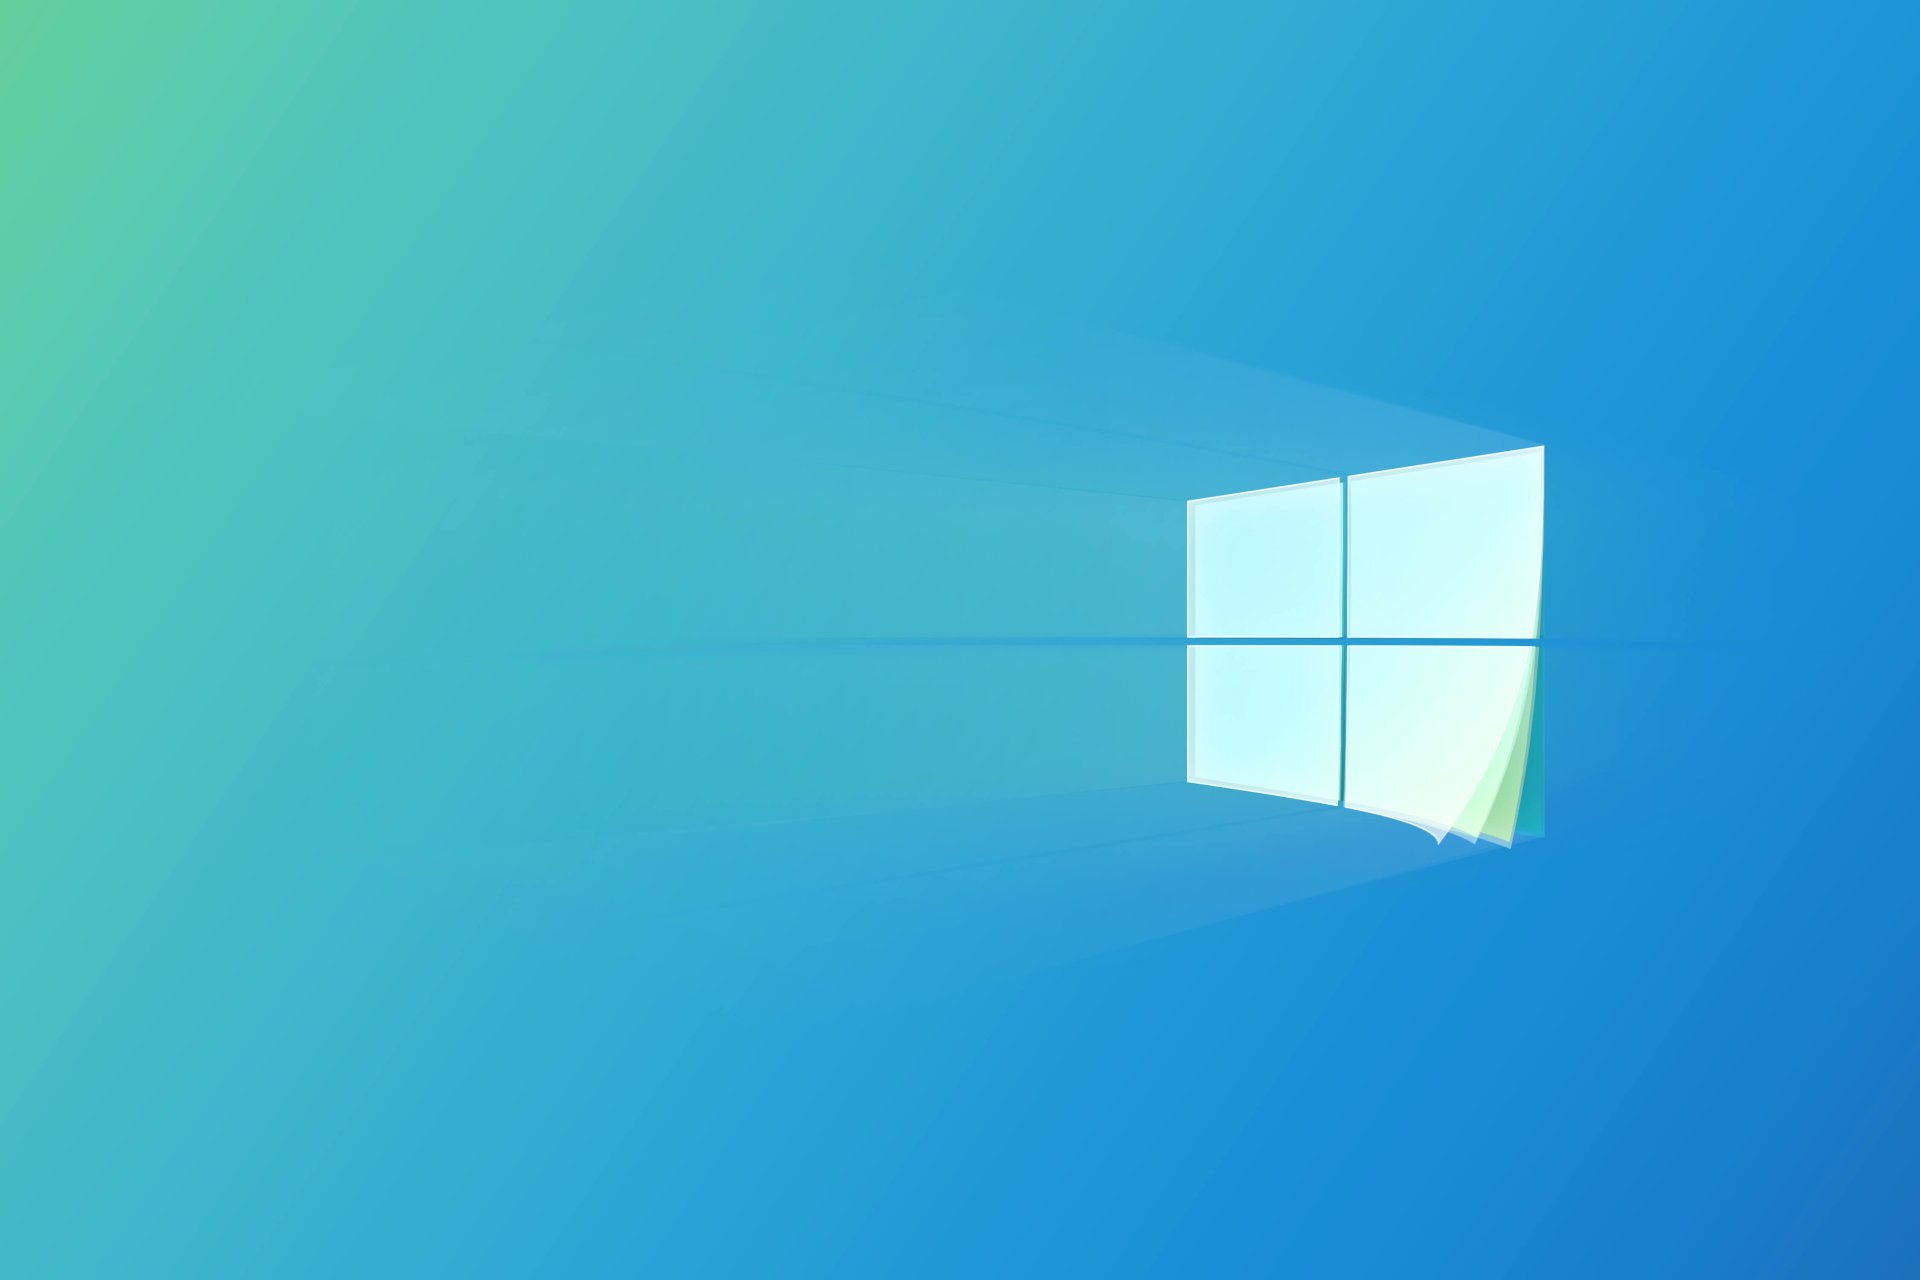 Thiết kế Fluent Windows 10: Với thiết kế Fluent Windows 10, Microsoft đã có một bước tiến đáng kể trong việc cải tiến giao diện người dùng. Hãy xem hình ảnh liên quan để khám phá những tính năng mới của thiết kế Fluent, bao gồm màu sắc, ánh sáng, độ đồng nhất, và tích hợp chuyển động, giúp bạn dễ dàng sử dụng và trải nghiệm tốt hơn.